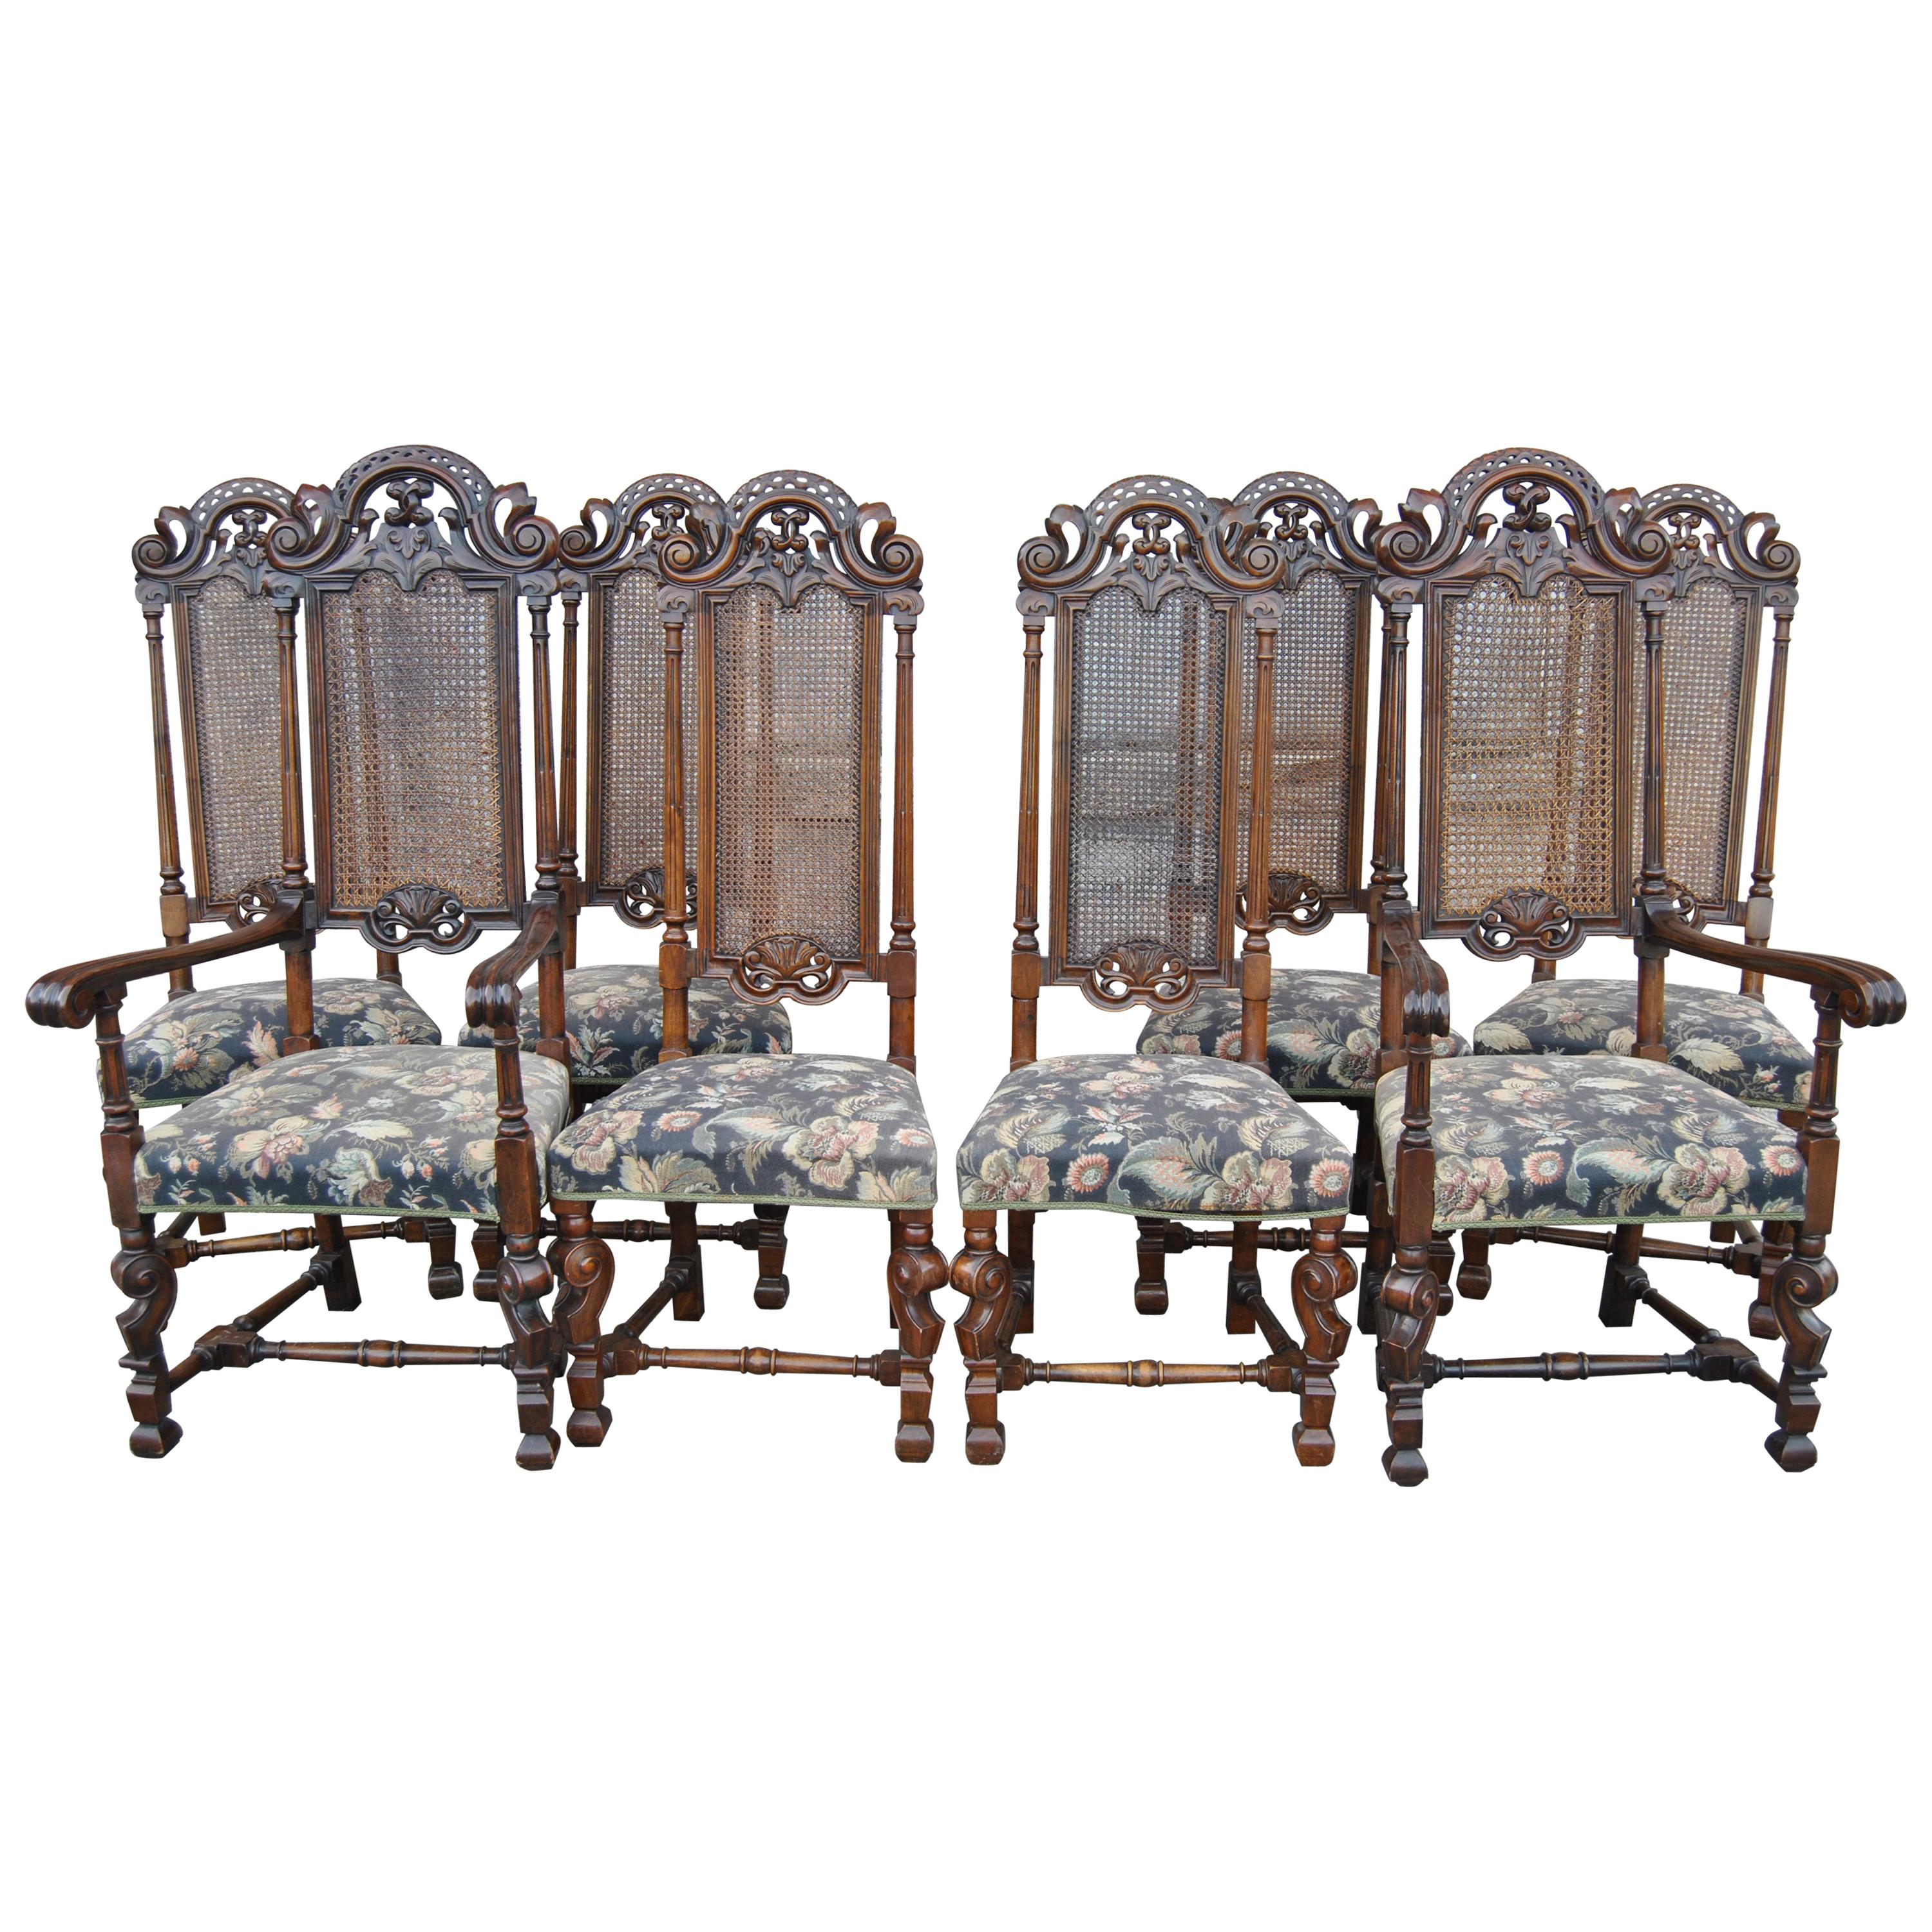 Set de huit chaises de style William and Mary à haut dossier en noyer du XIXe siècle